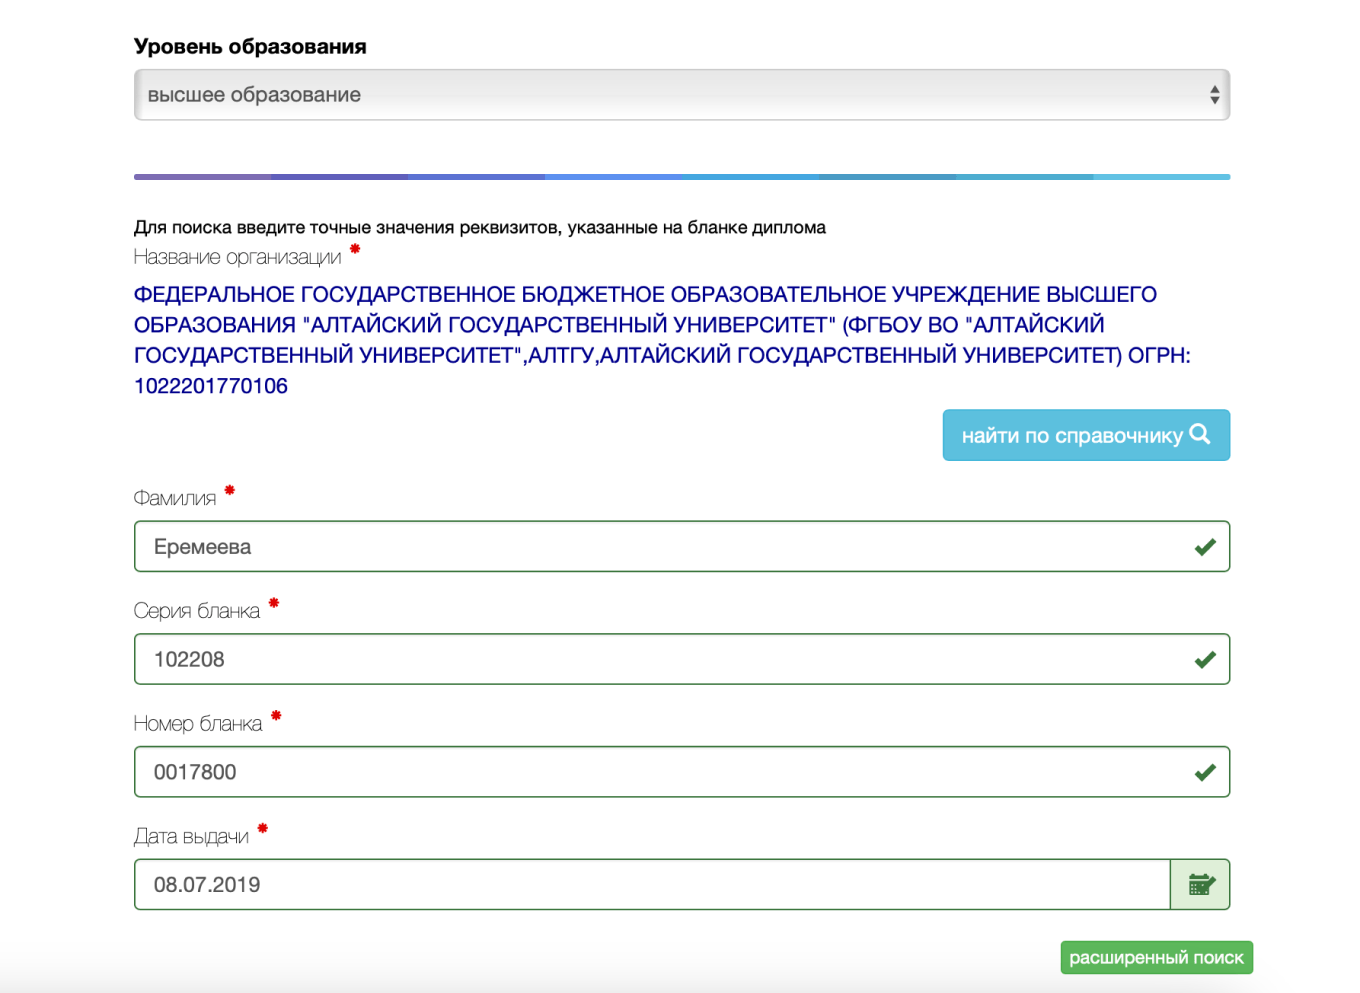 На сайте Рособрнадзора есть форма для проверки диплома